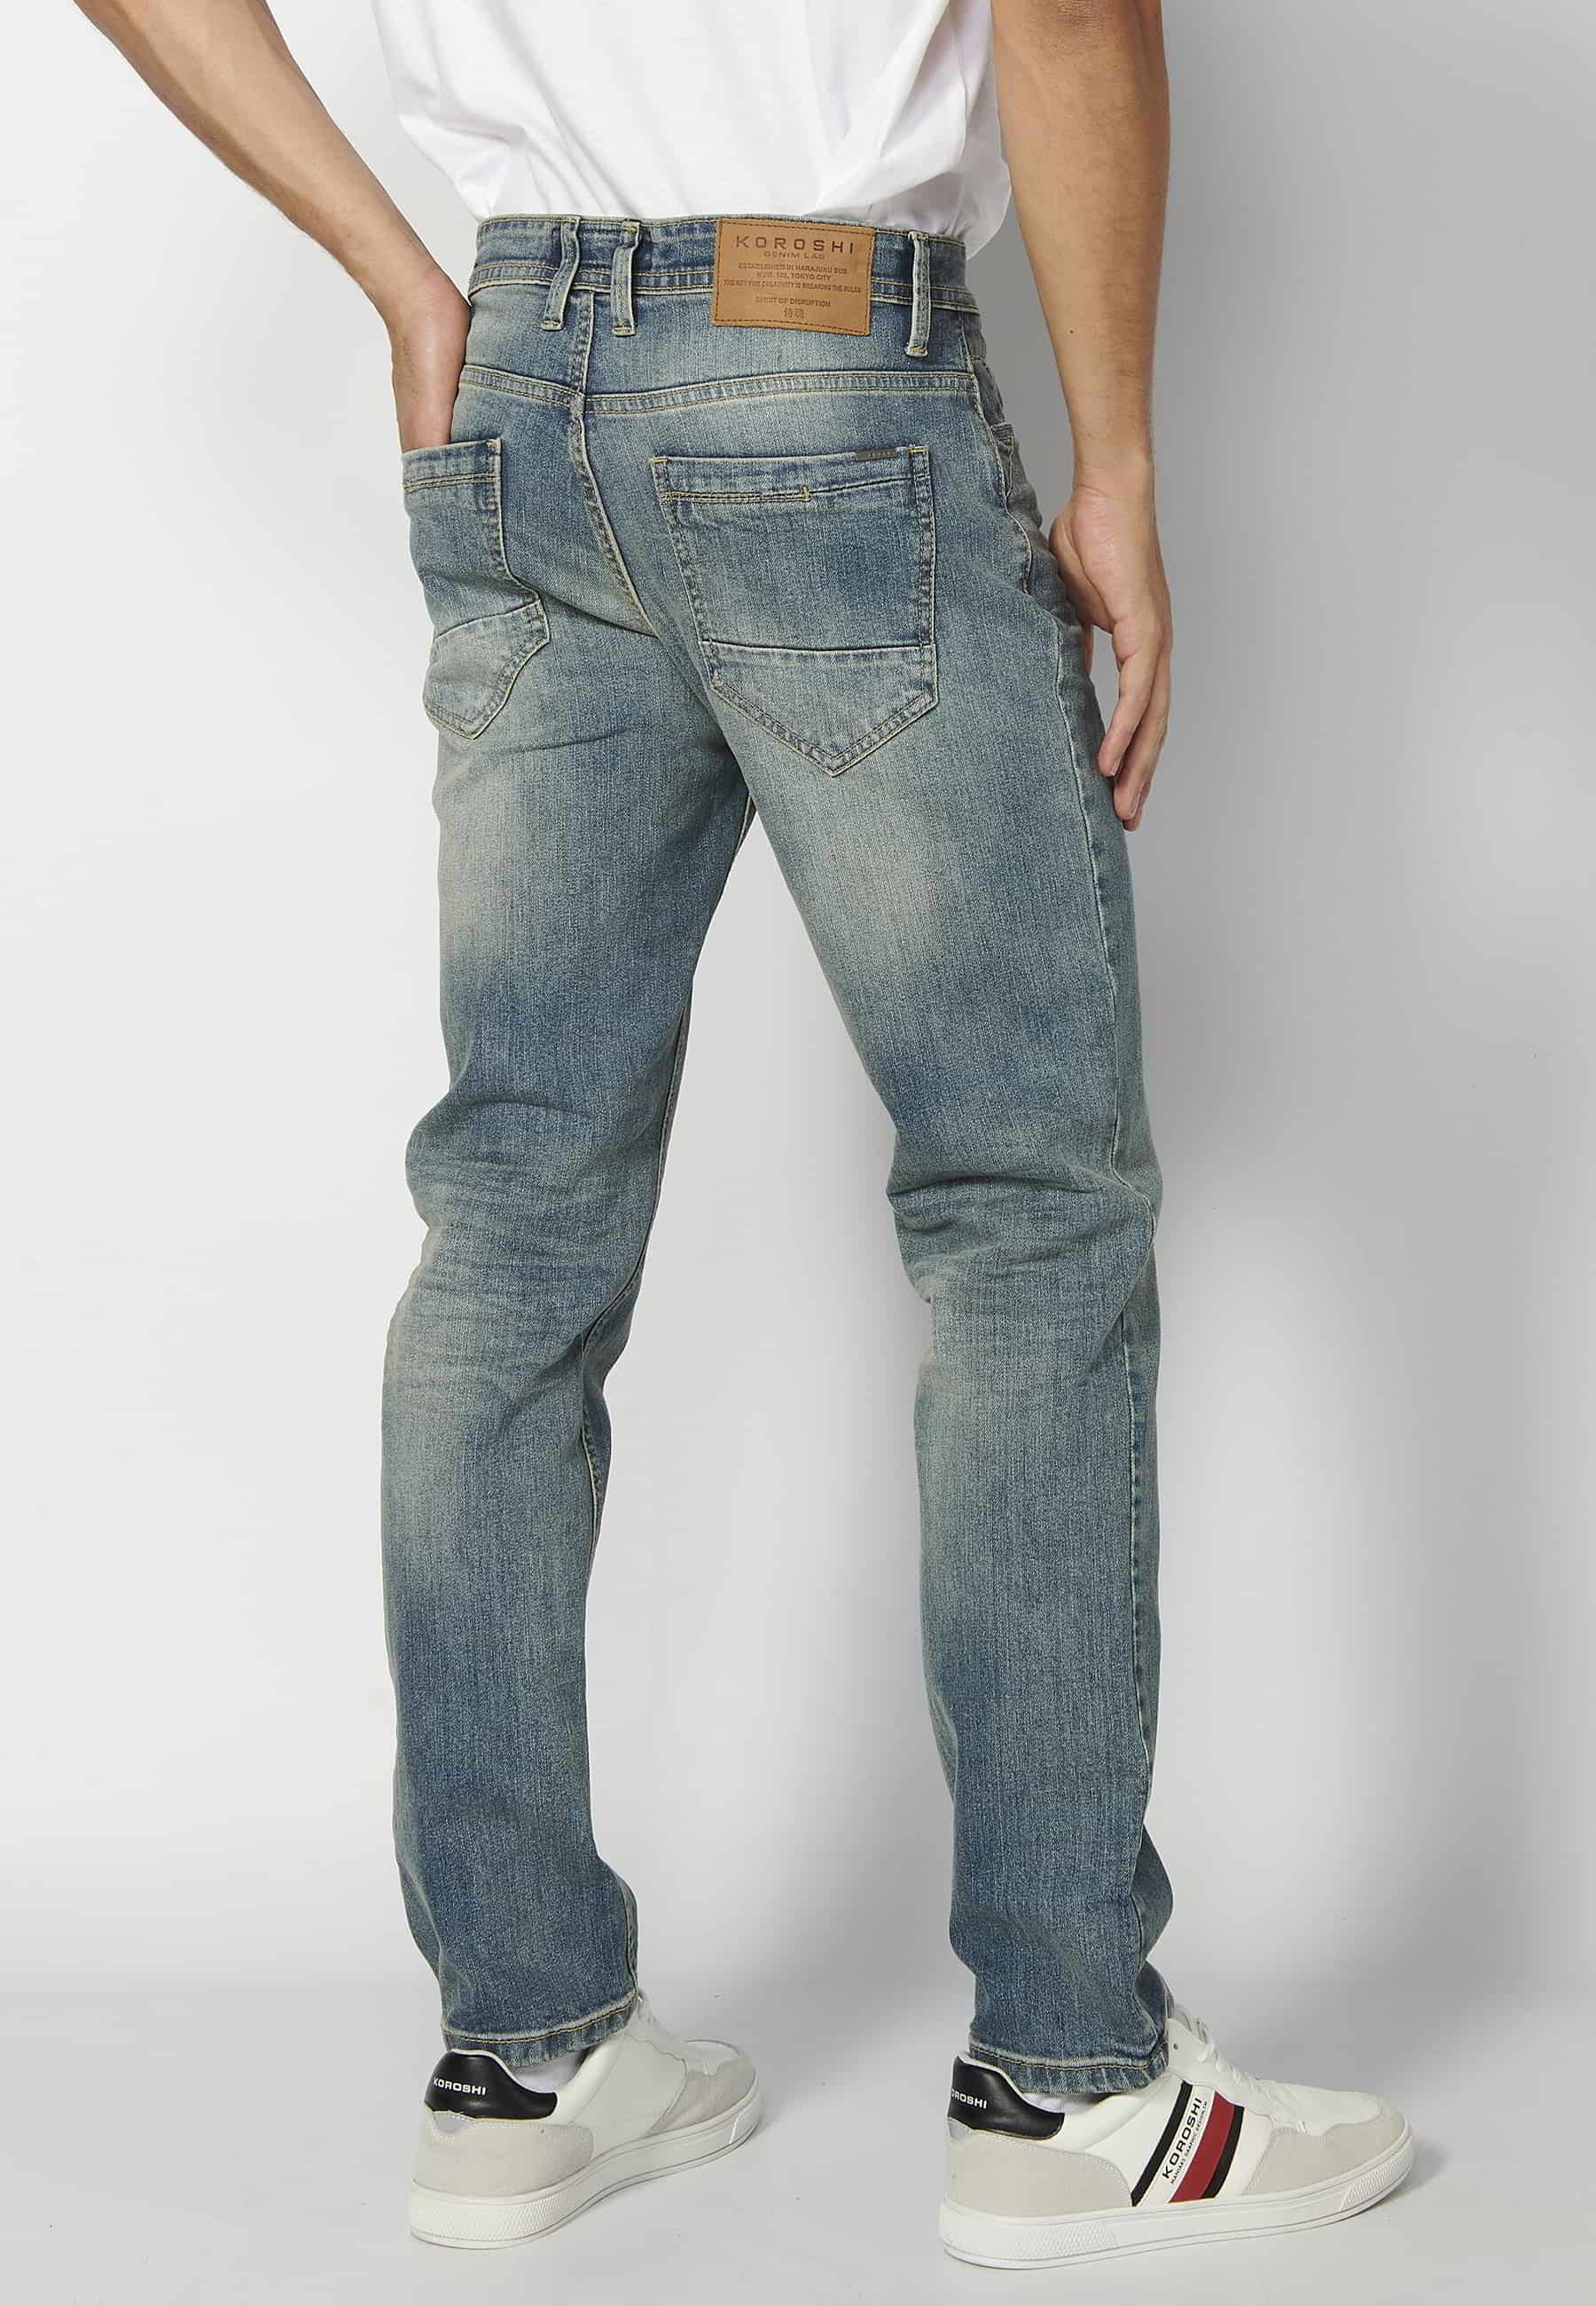 Pantalons llargs super skinny, amb cinc butxaques, color gris desgastat per a Home 2